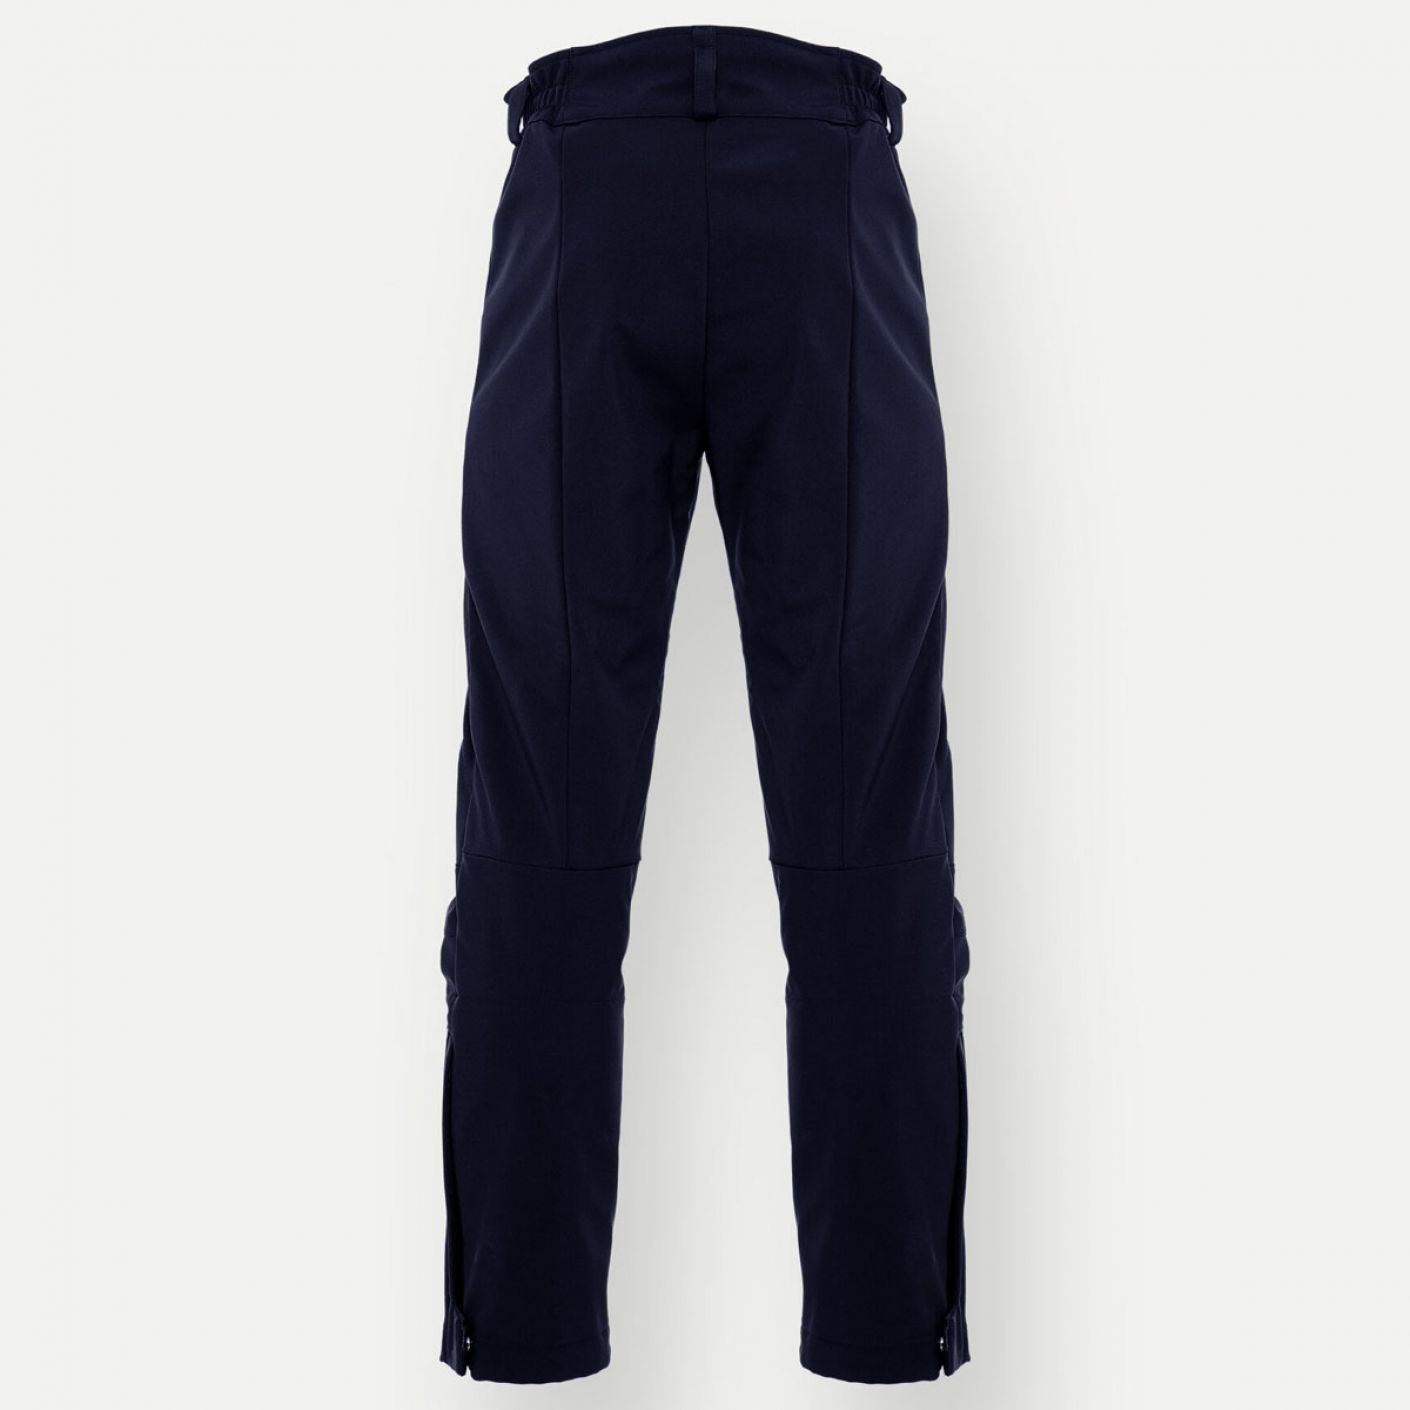 Colmar Men's Softshell Ski Pants Blue